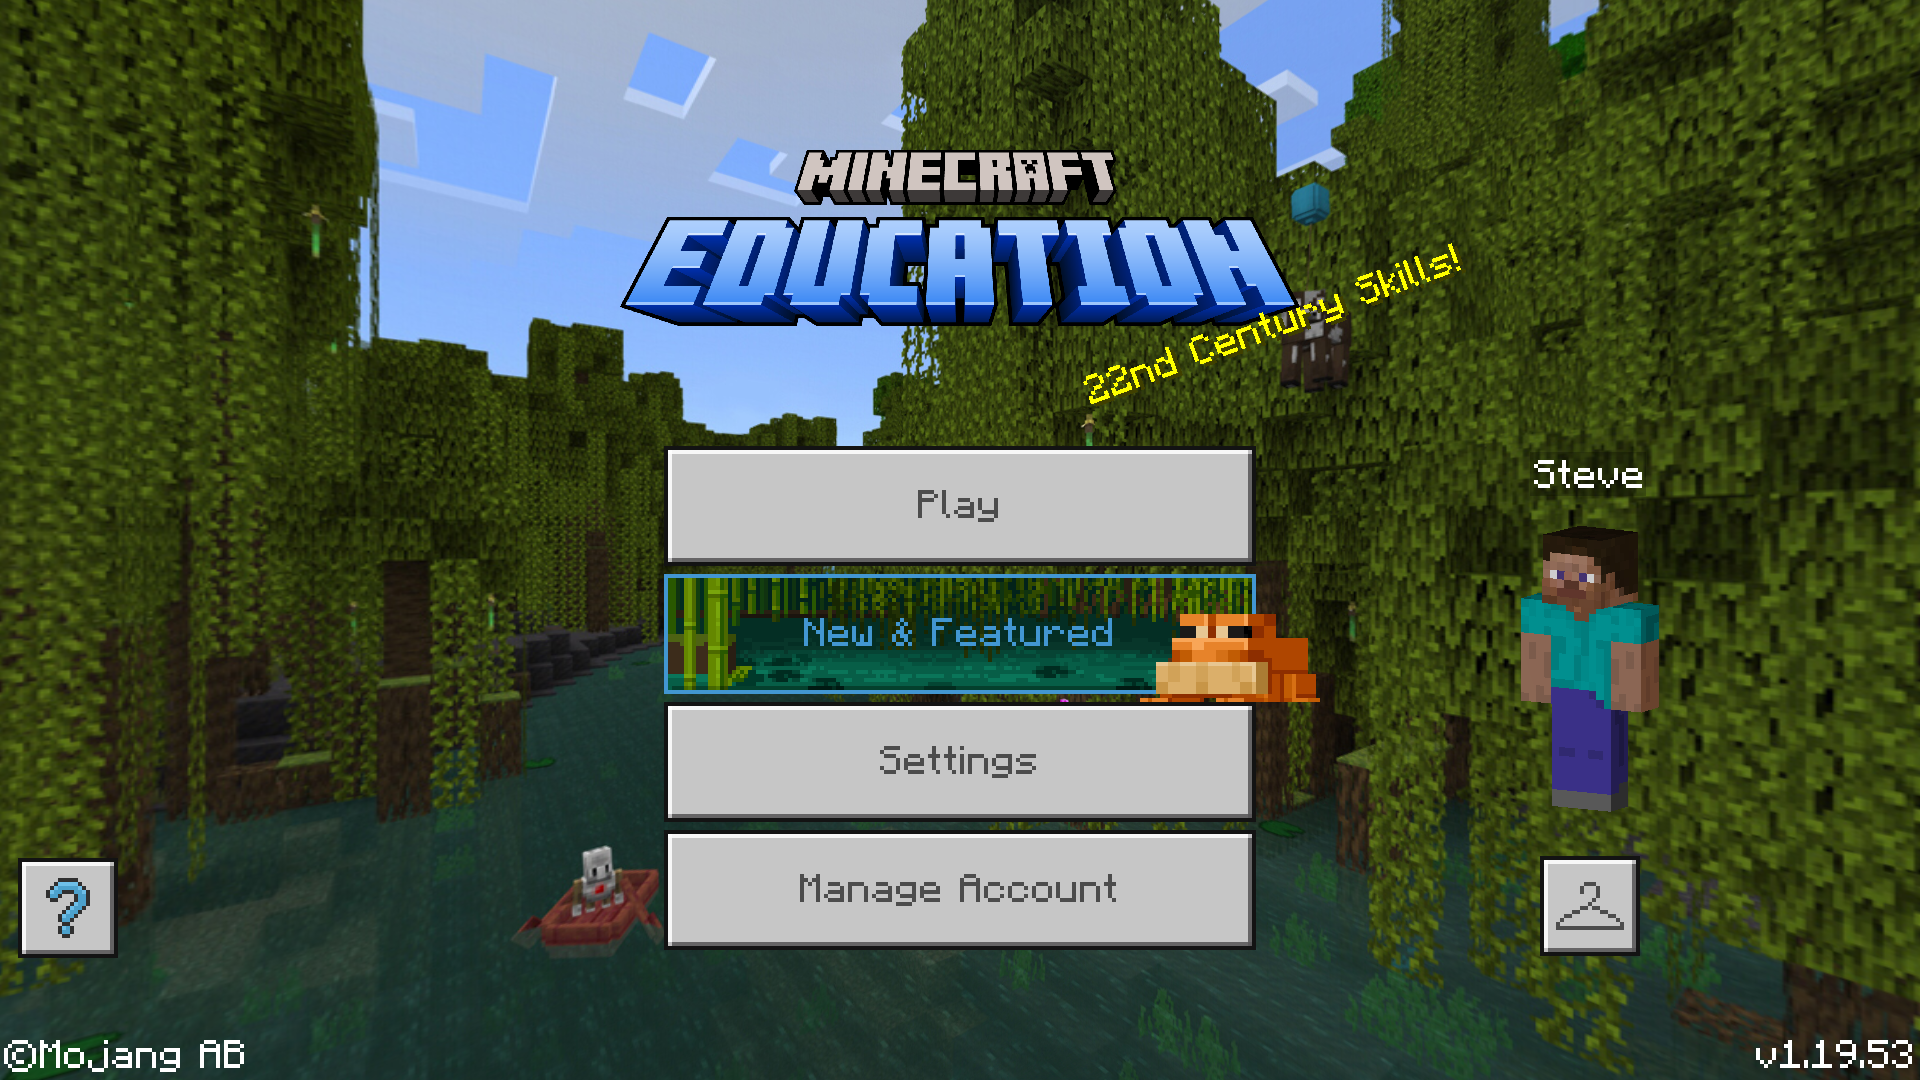 Minecraft Education 1.19.53 - Minecraft Wiki